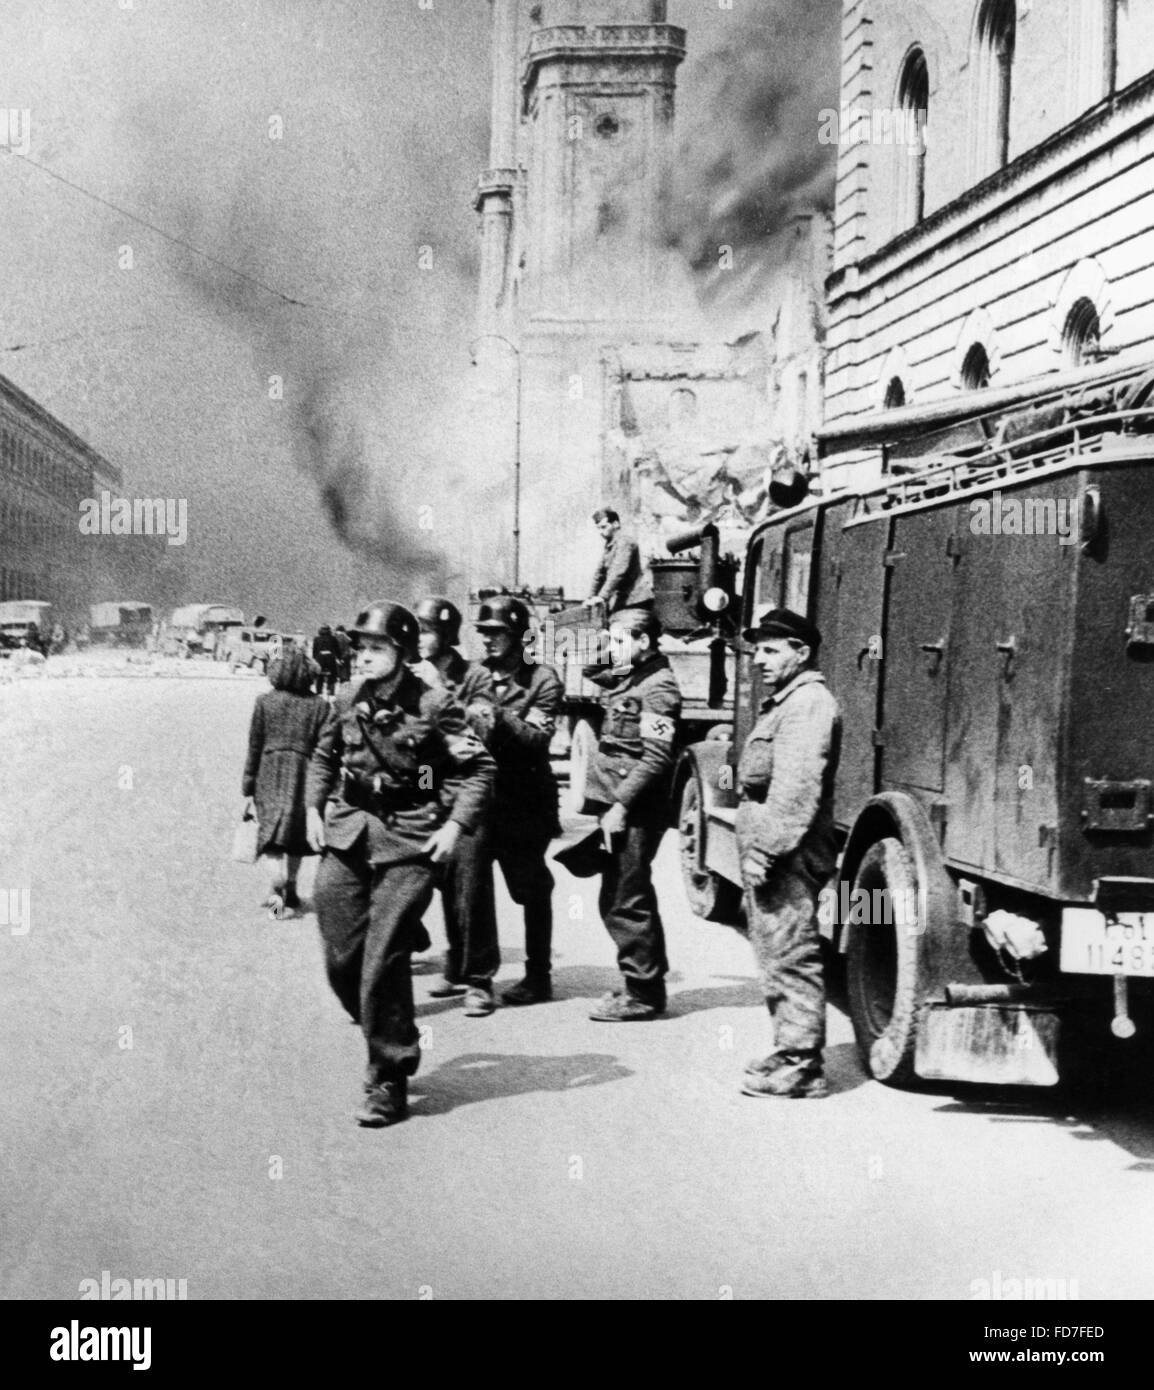 HJ members as firefighter helpers in Munich, 1944 Stock Photo